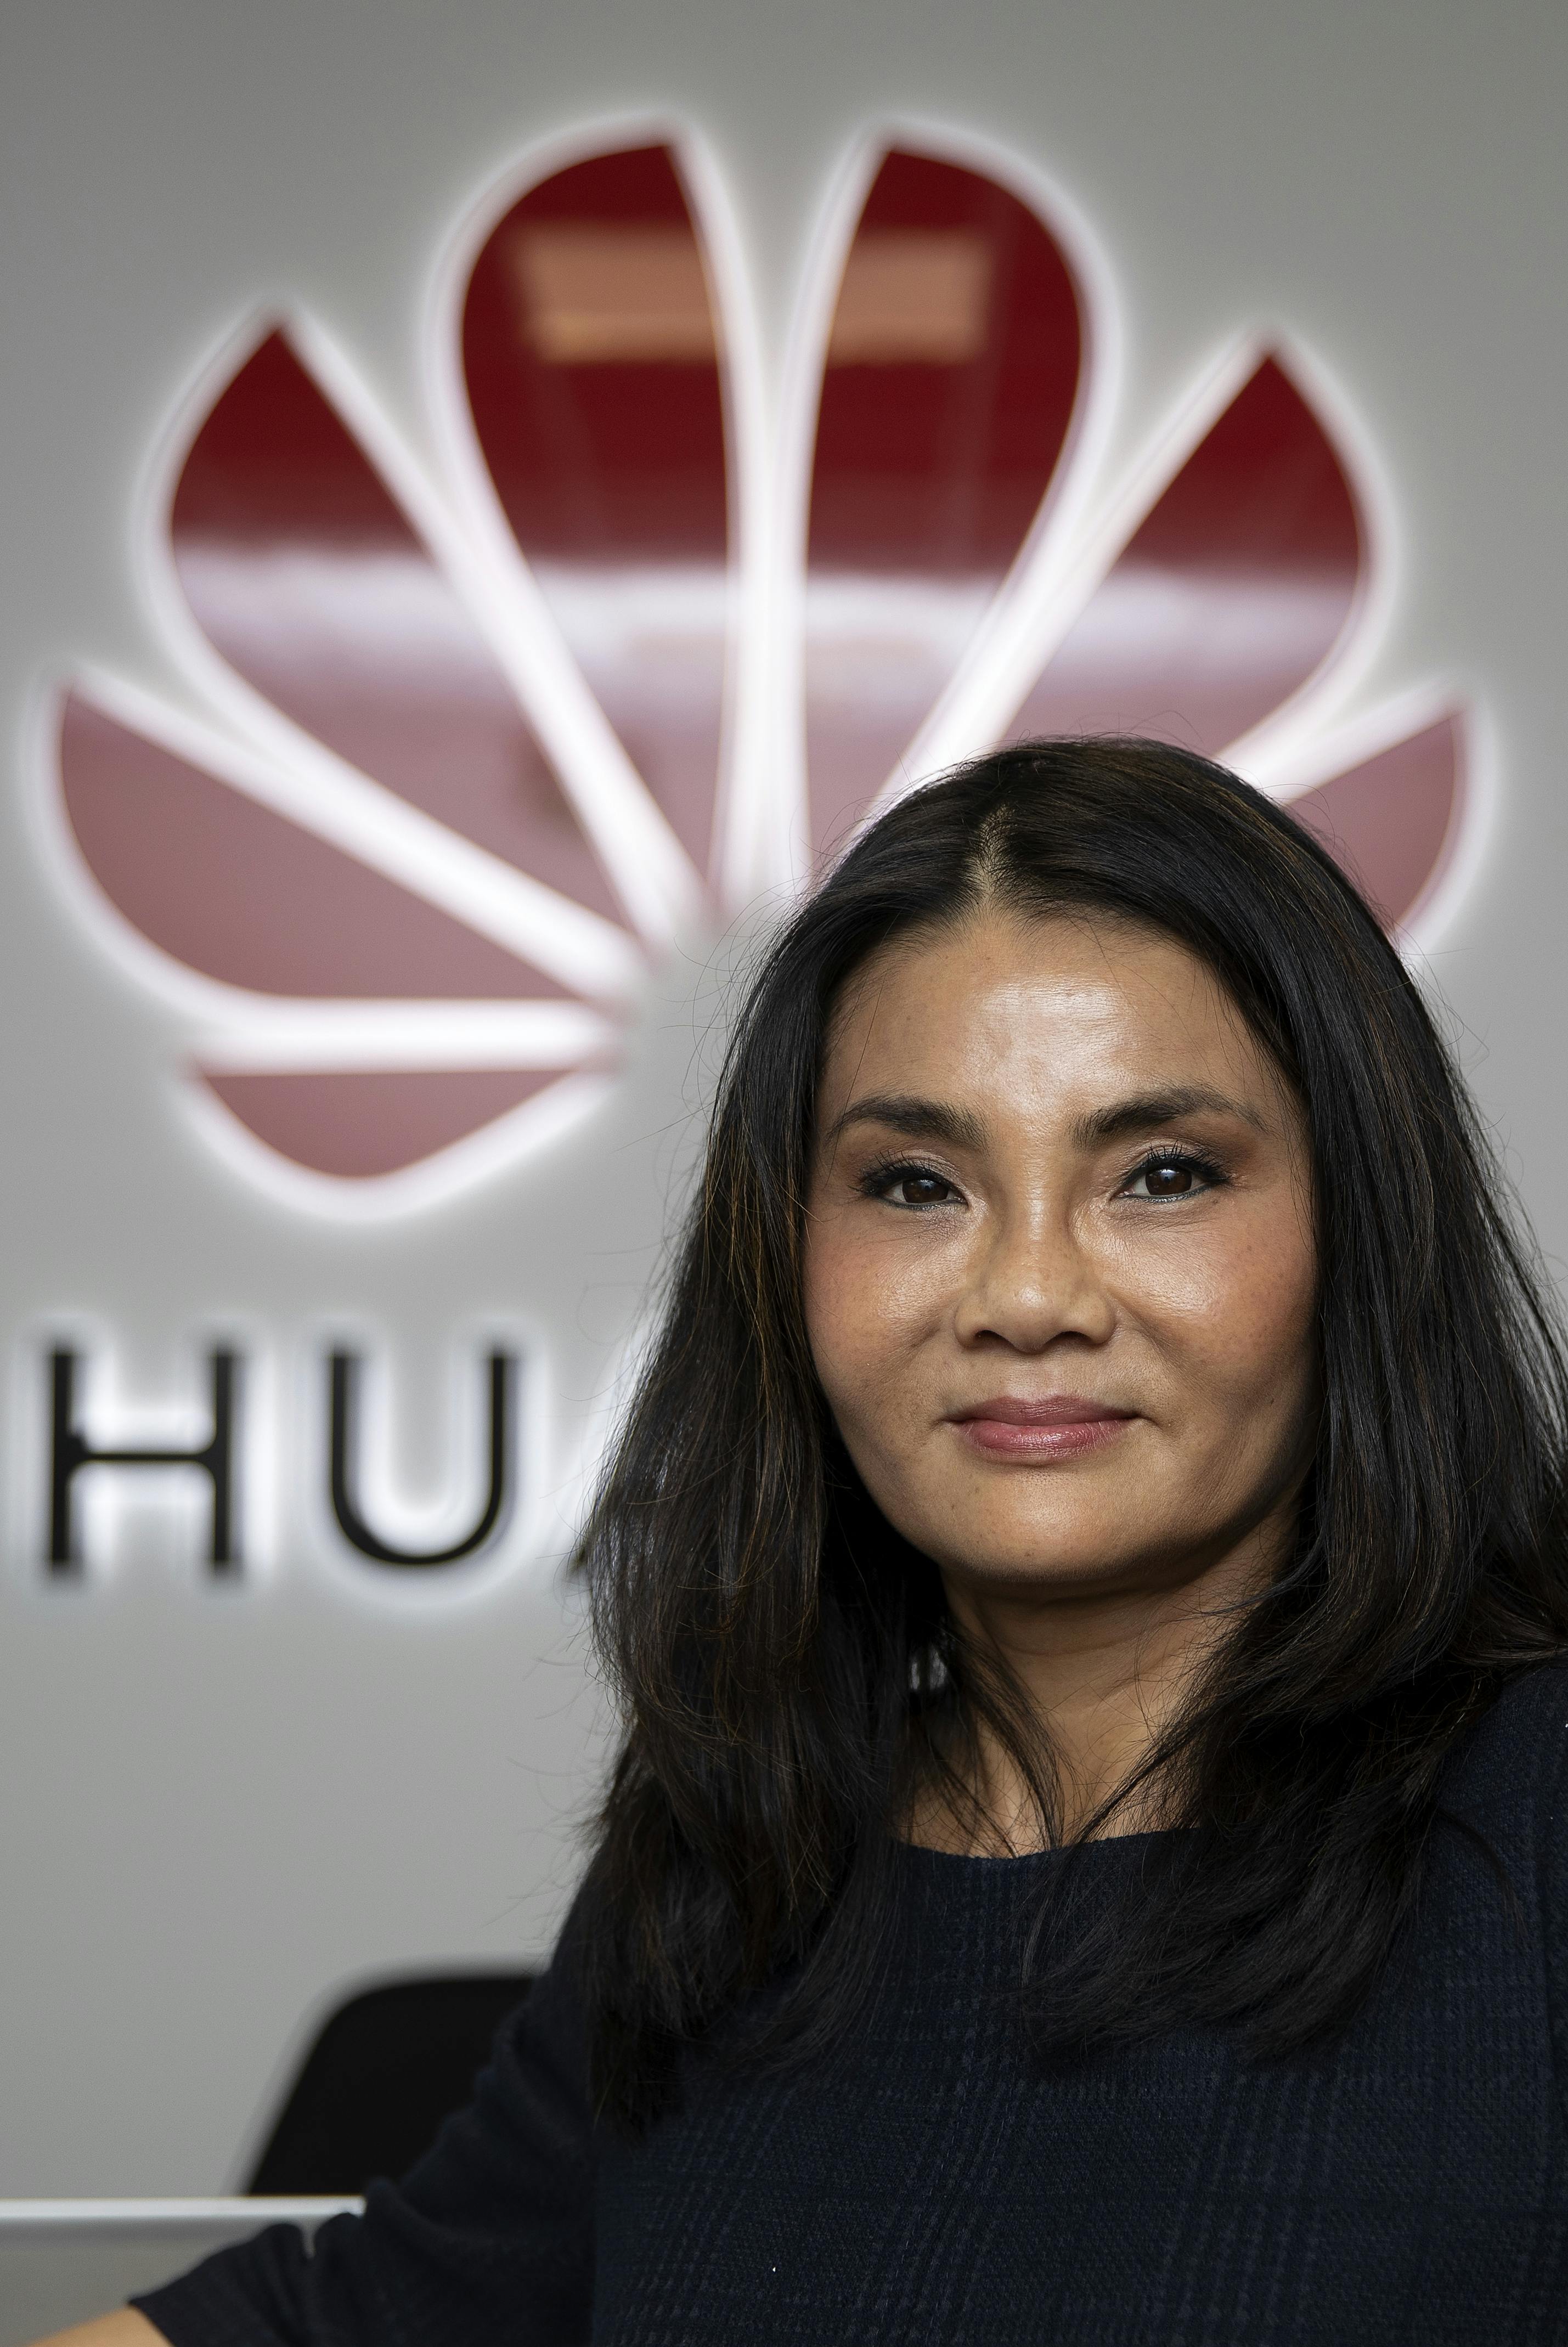 Xukun Ji, kommunikationsansvarlig for Huawei i Danmark, medvirker i det nyeste afsnit af det kritiserede DR-program "Ellen Imellem". Men hun føler sig lokket på et falsk grundlag, fordi hun ikke vidste, at spørgsmålene ikke stilles af journalisten, men formanden for Dansk Kina-Kritisk Selskab.
